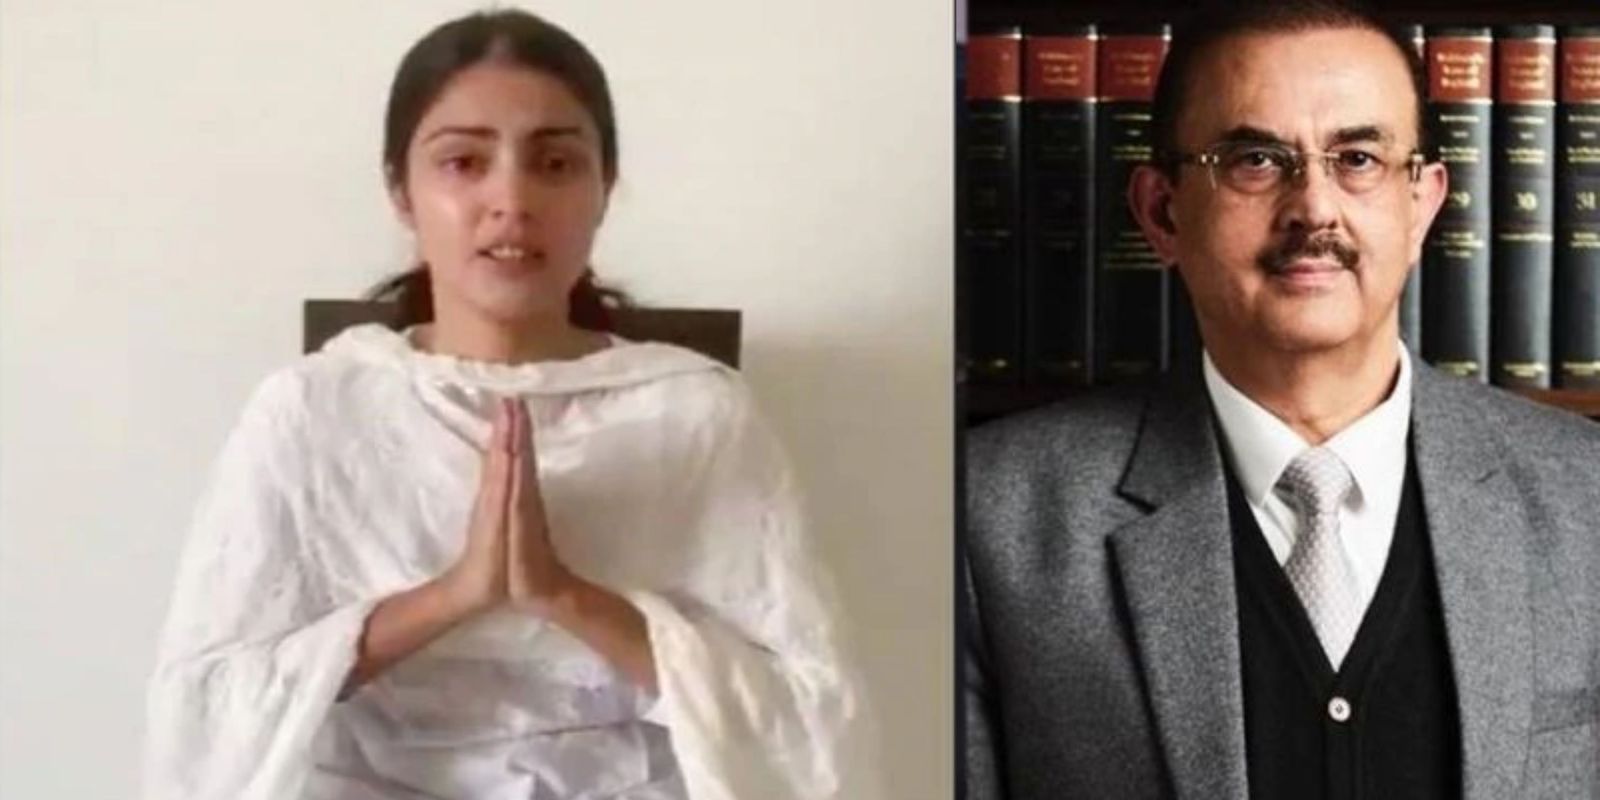  रिया चक्रवर्ती ने सुशांत सिंह राजपूत केस में CBI जांच को बताया अवैध, कहा 'यह फेडरलिज़्म के खिलाफ है'